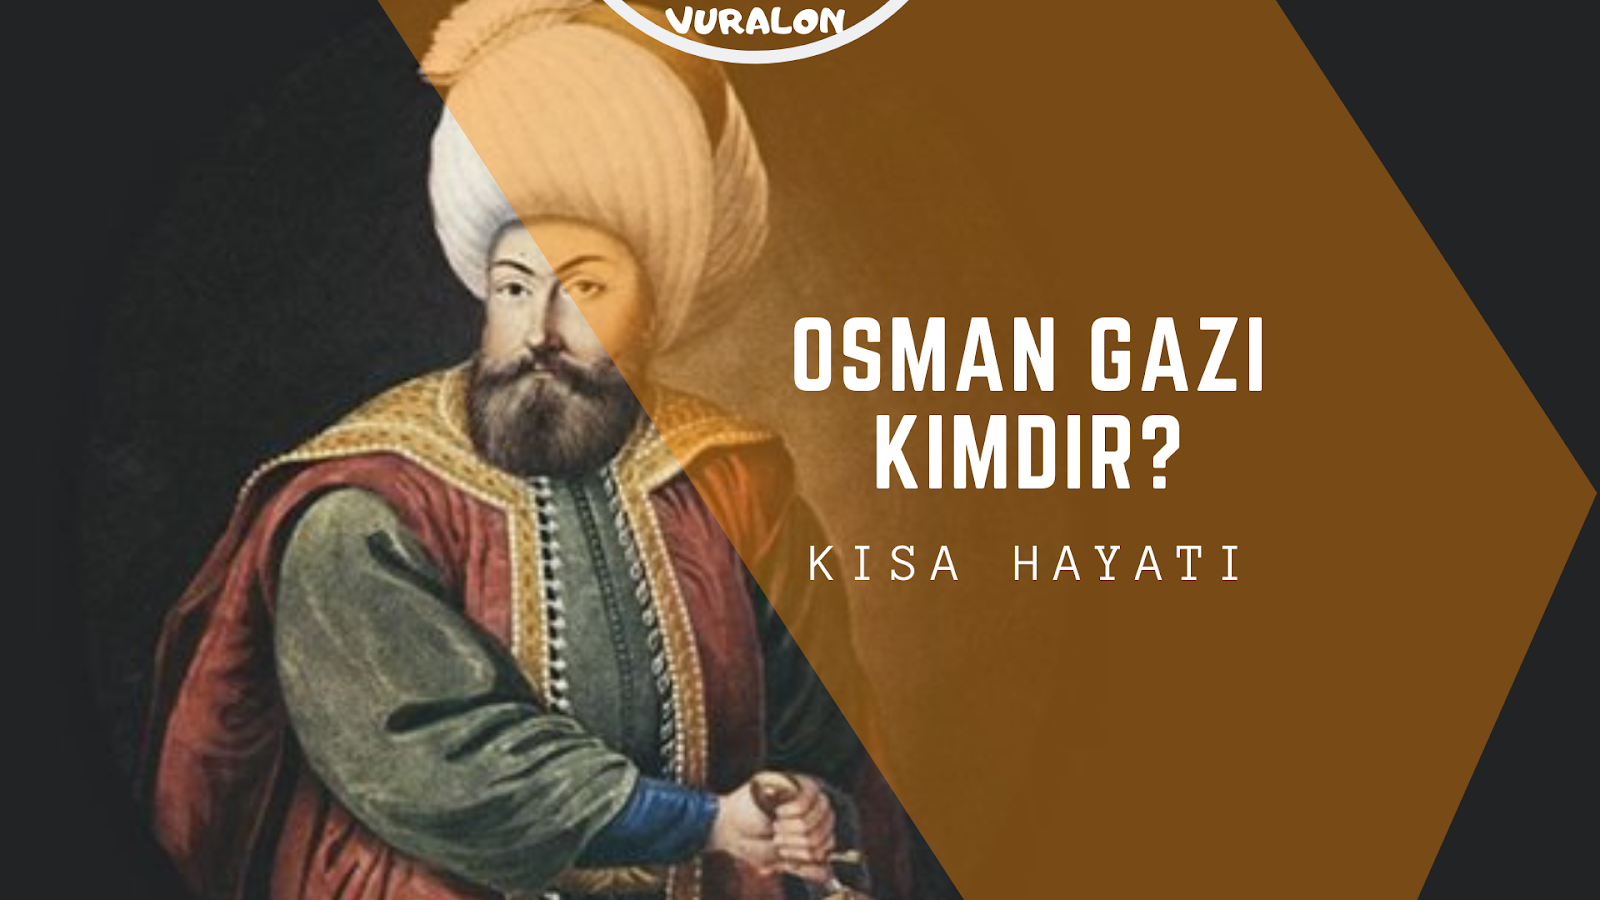 Osman Gazi Kimdir?